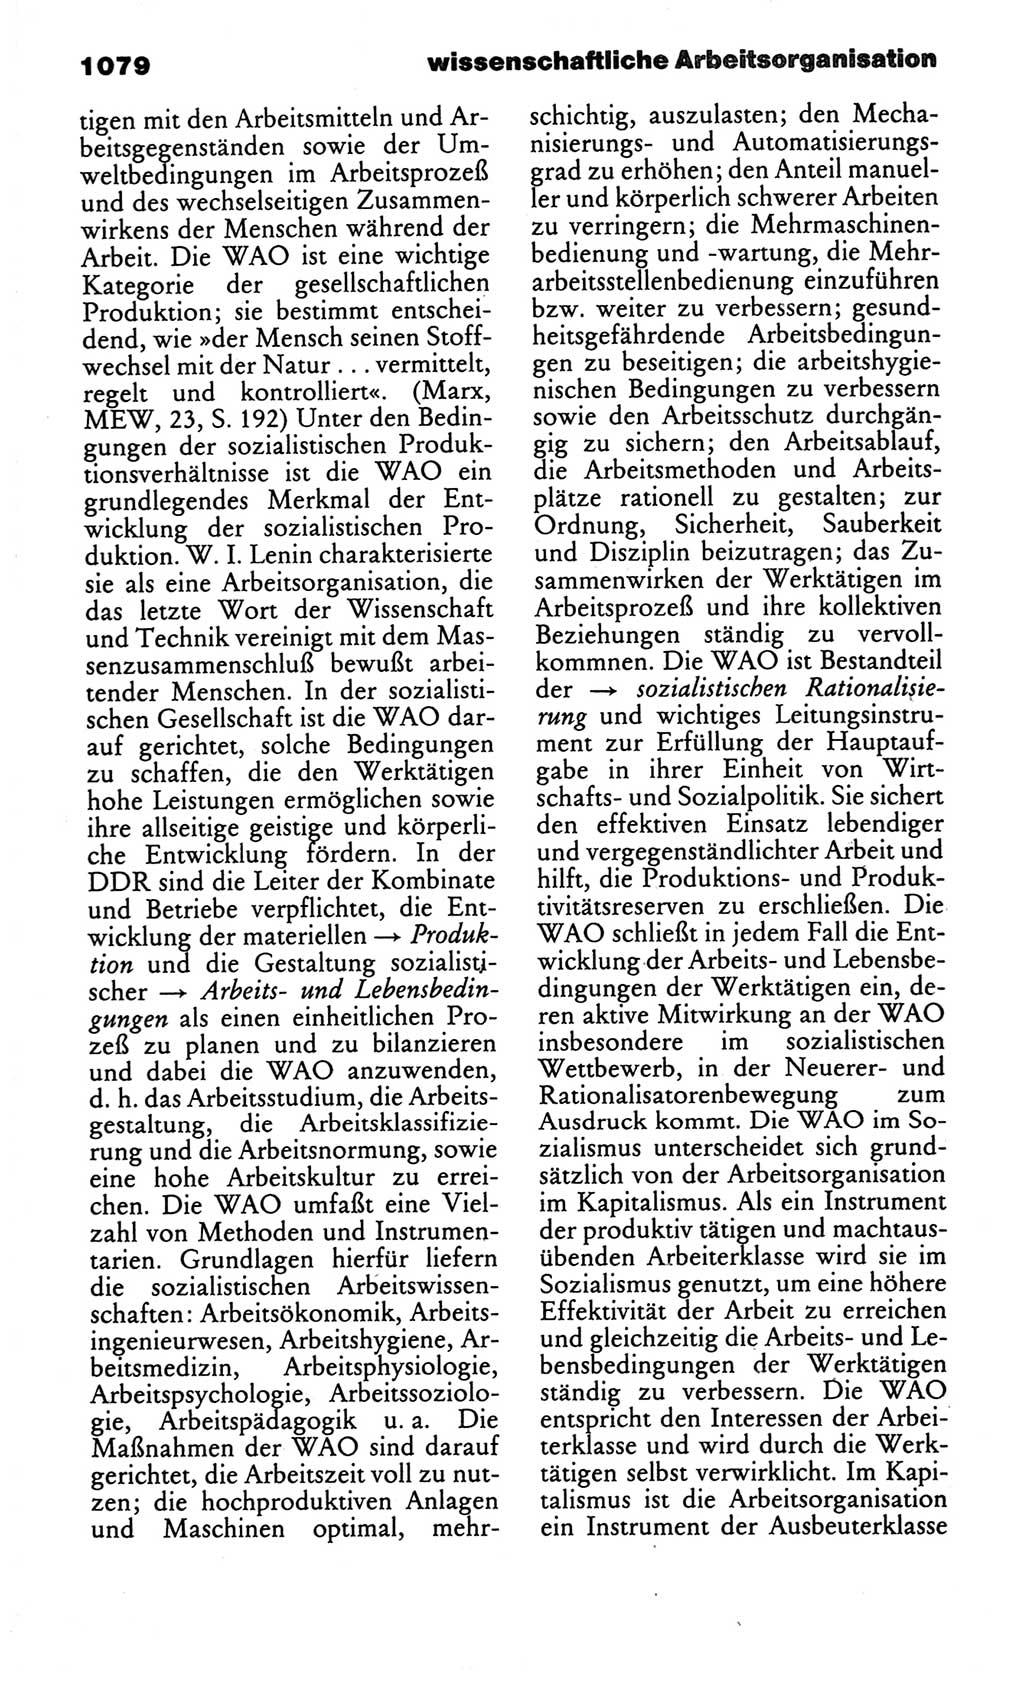 Kleines politisches Wörterbuch [Deutsche Demokratische Republik (DDR)] 1986, Seite 1079 (Kl. pol. Wb. DDR 1986, S. 1079)